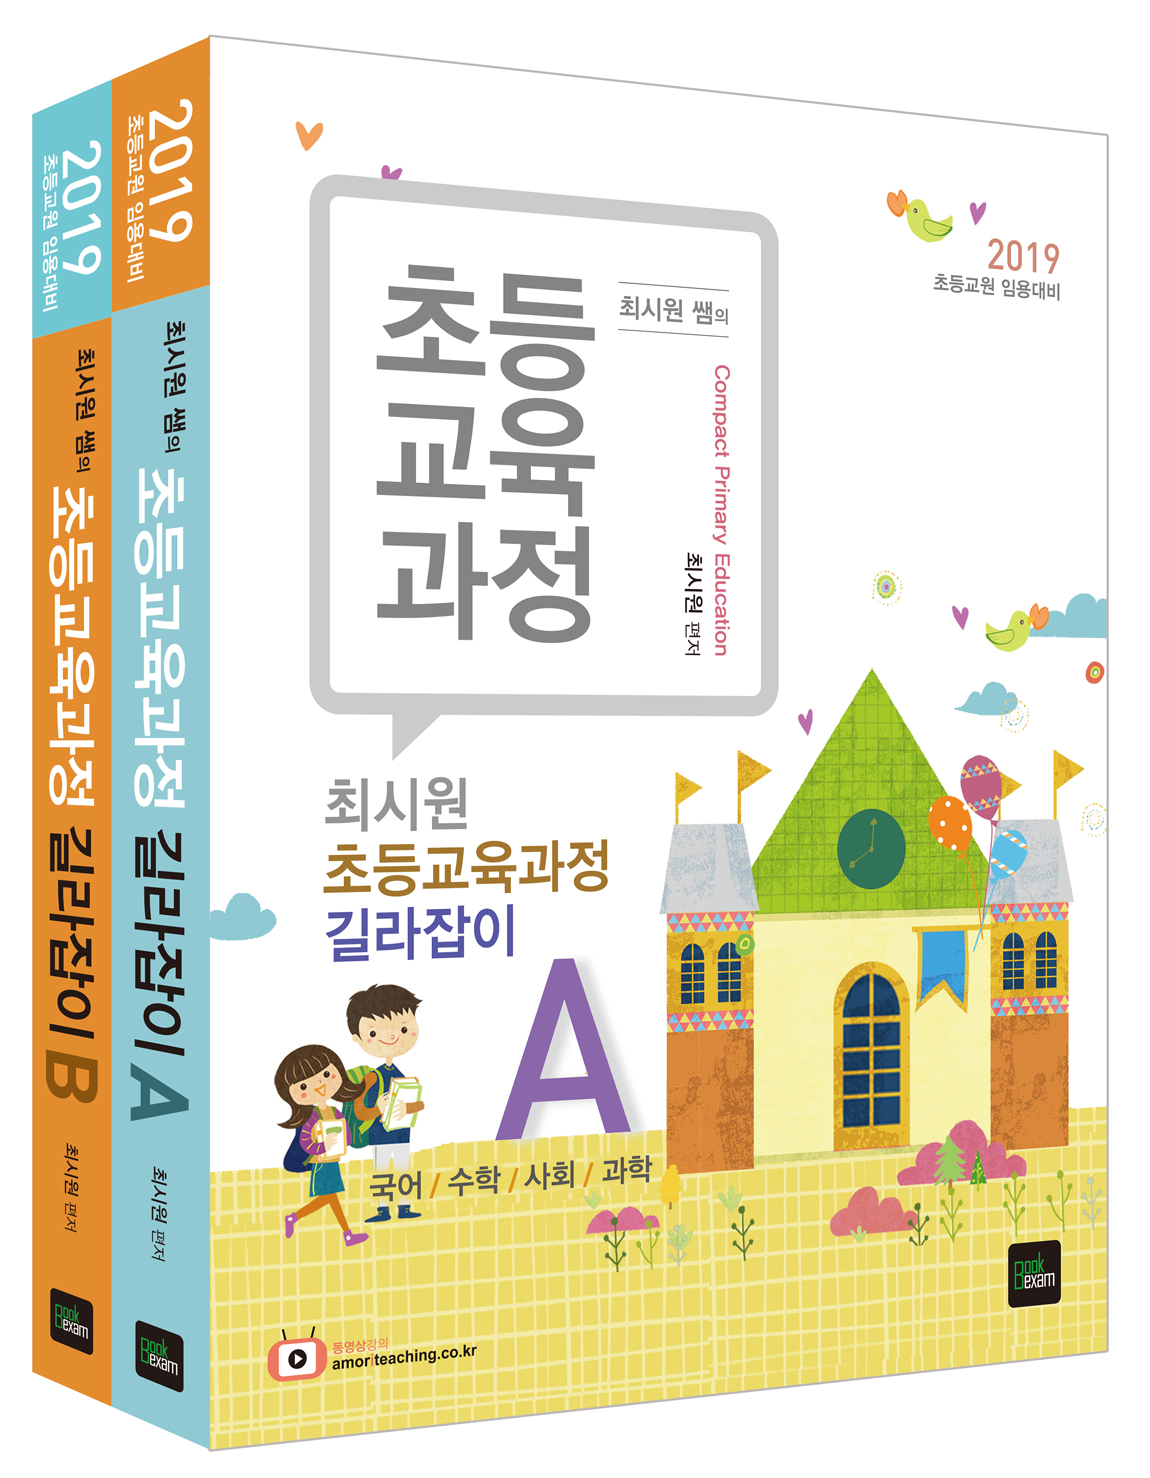 최시원 초등교육과정 길라잡이 세트 2019 (전2권)